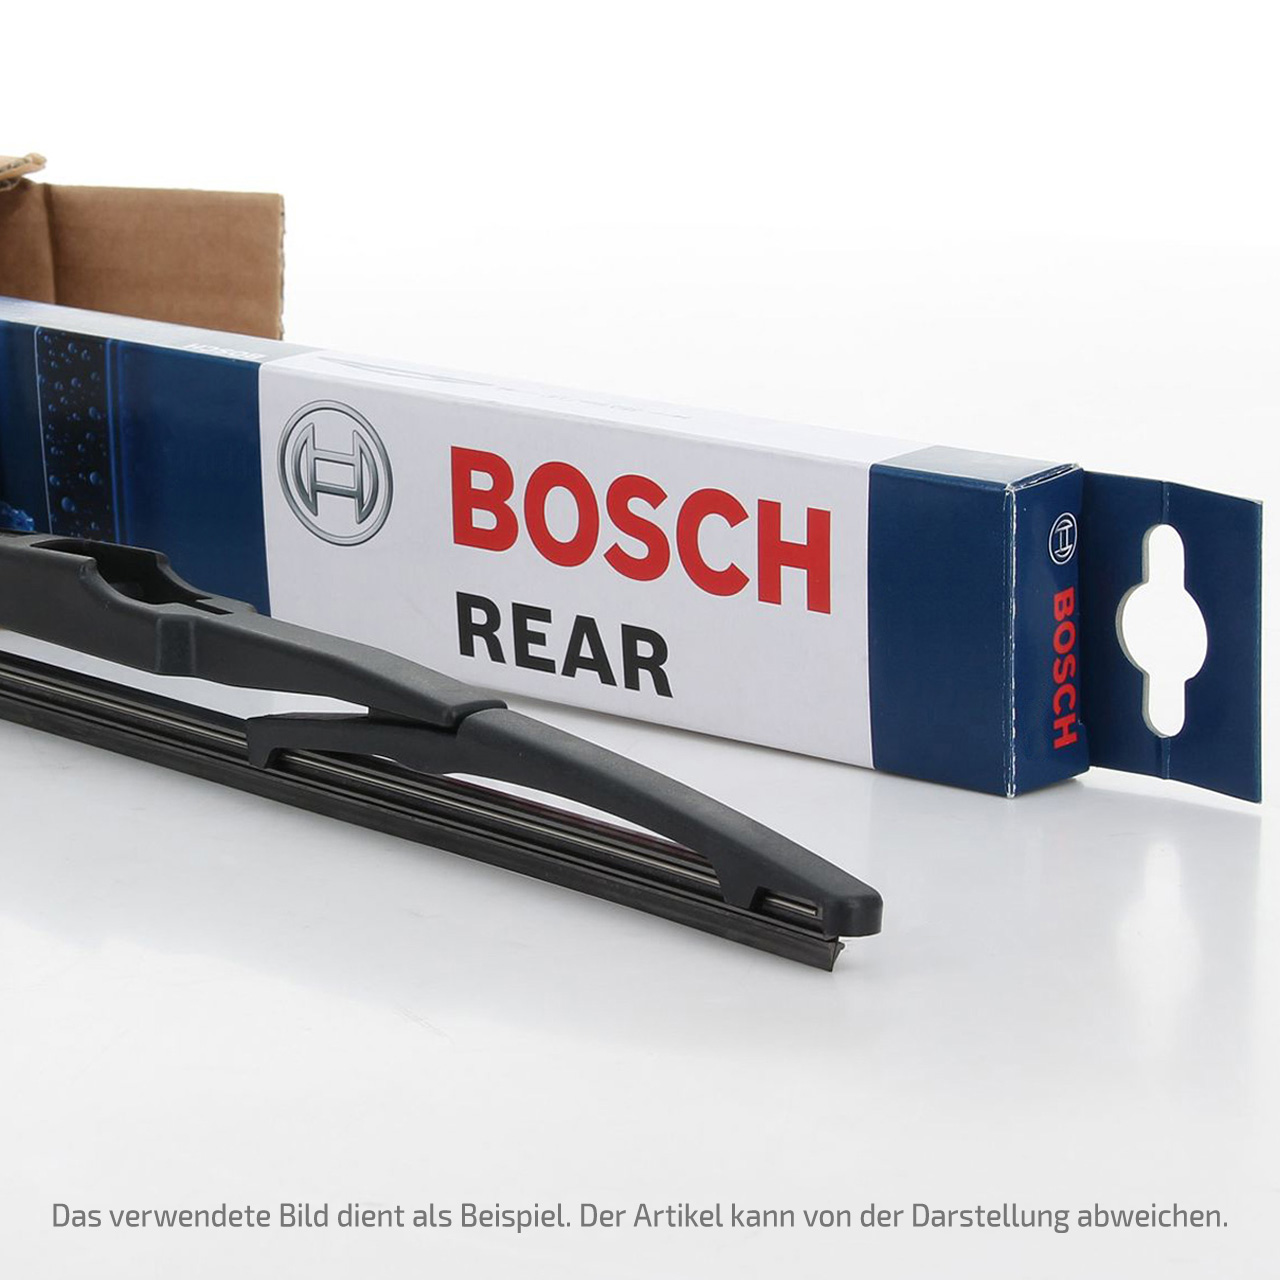 Welche Punkte es vorm Kauf die Bosch aerotwin a933s zu bewerten gibt